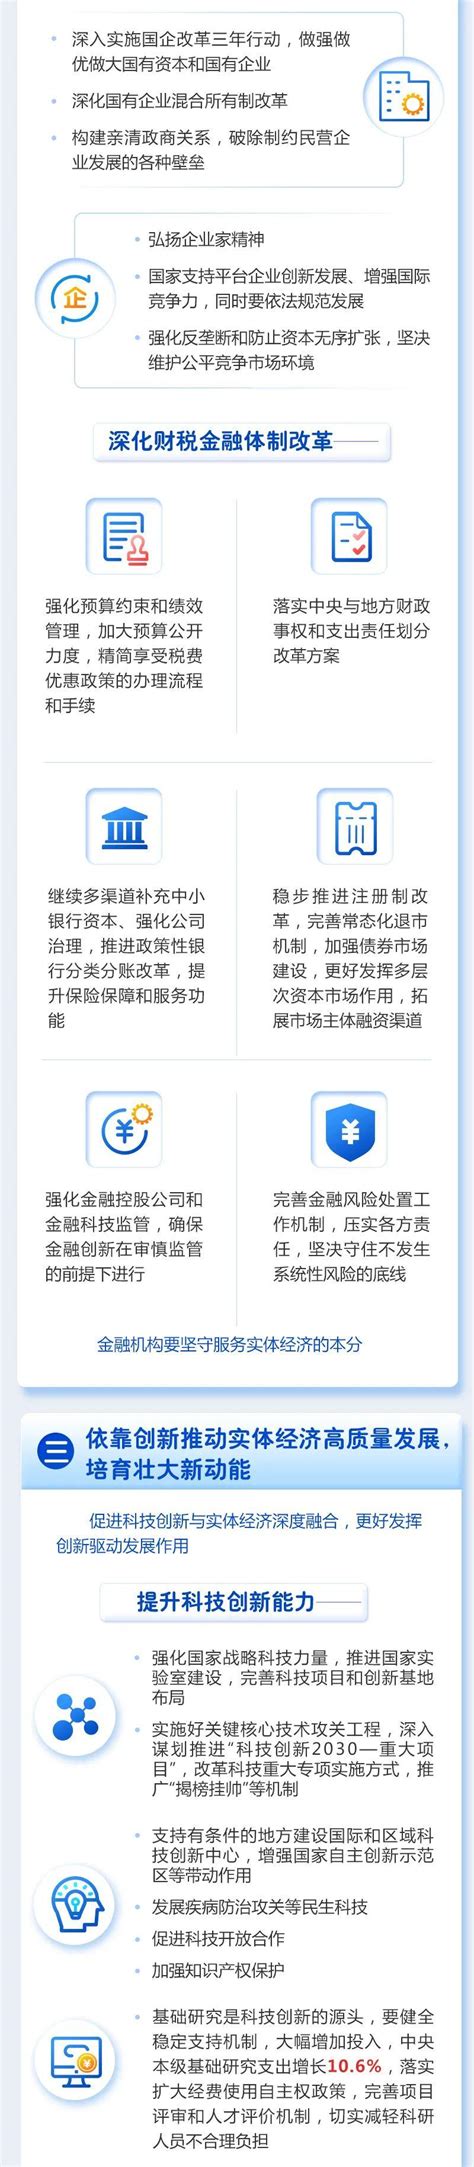 图解：浙江省政府工作报告 值得收藏-中国网